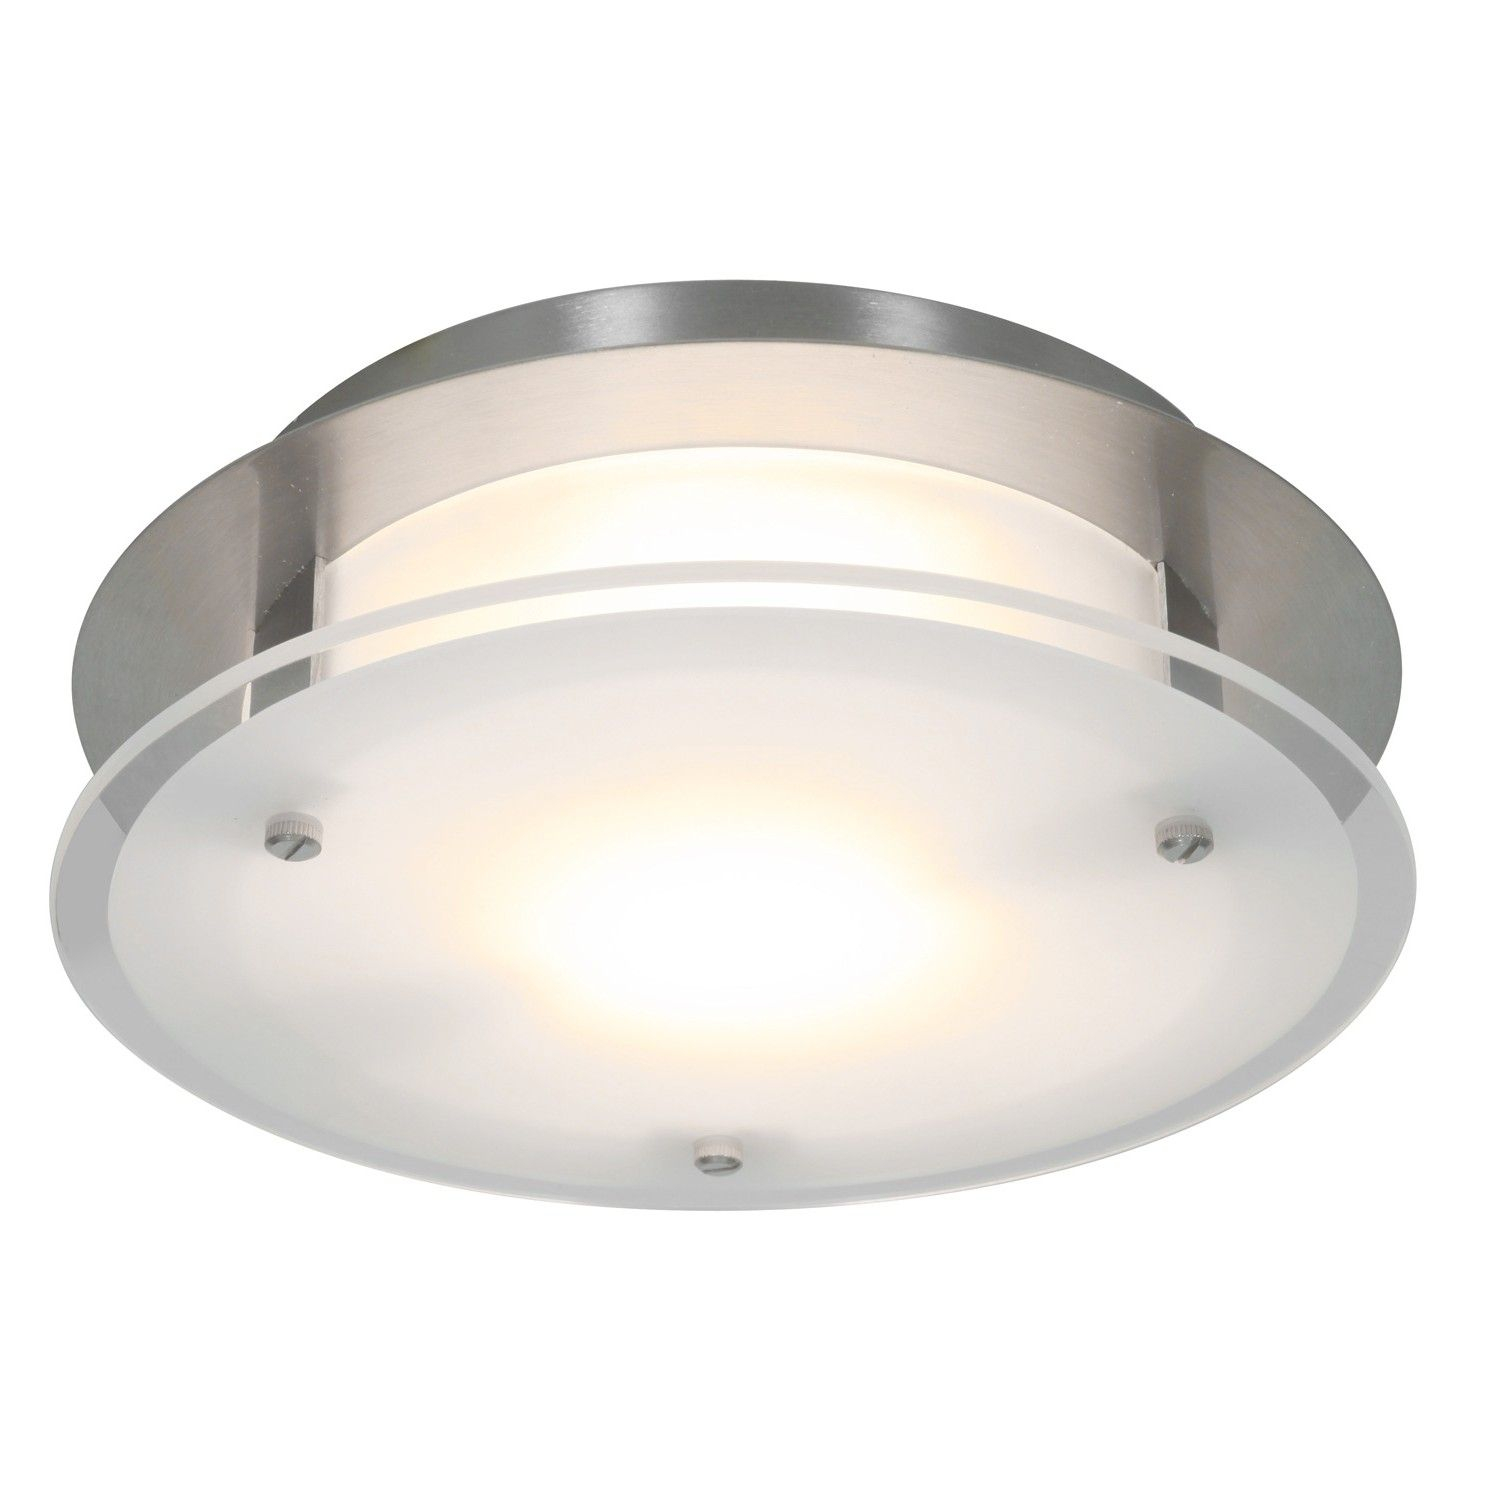 Luxury Ductless Bathroom Fan With Light Bathroom Fan Light in size 1500 X 1500